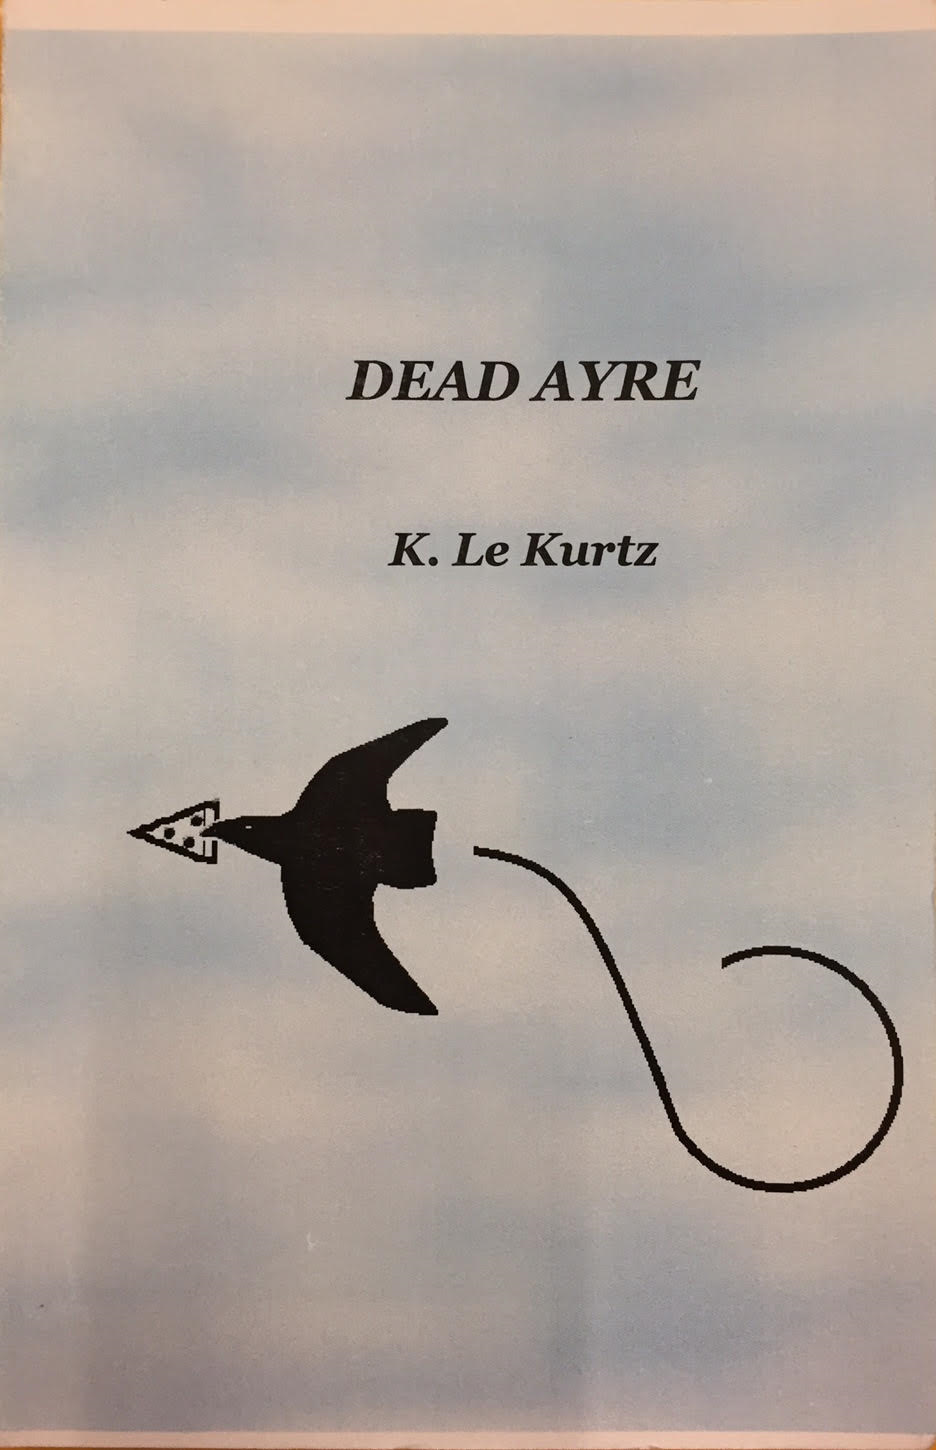 Dead Ayre by K. Le Kurtz